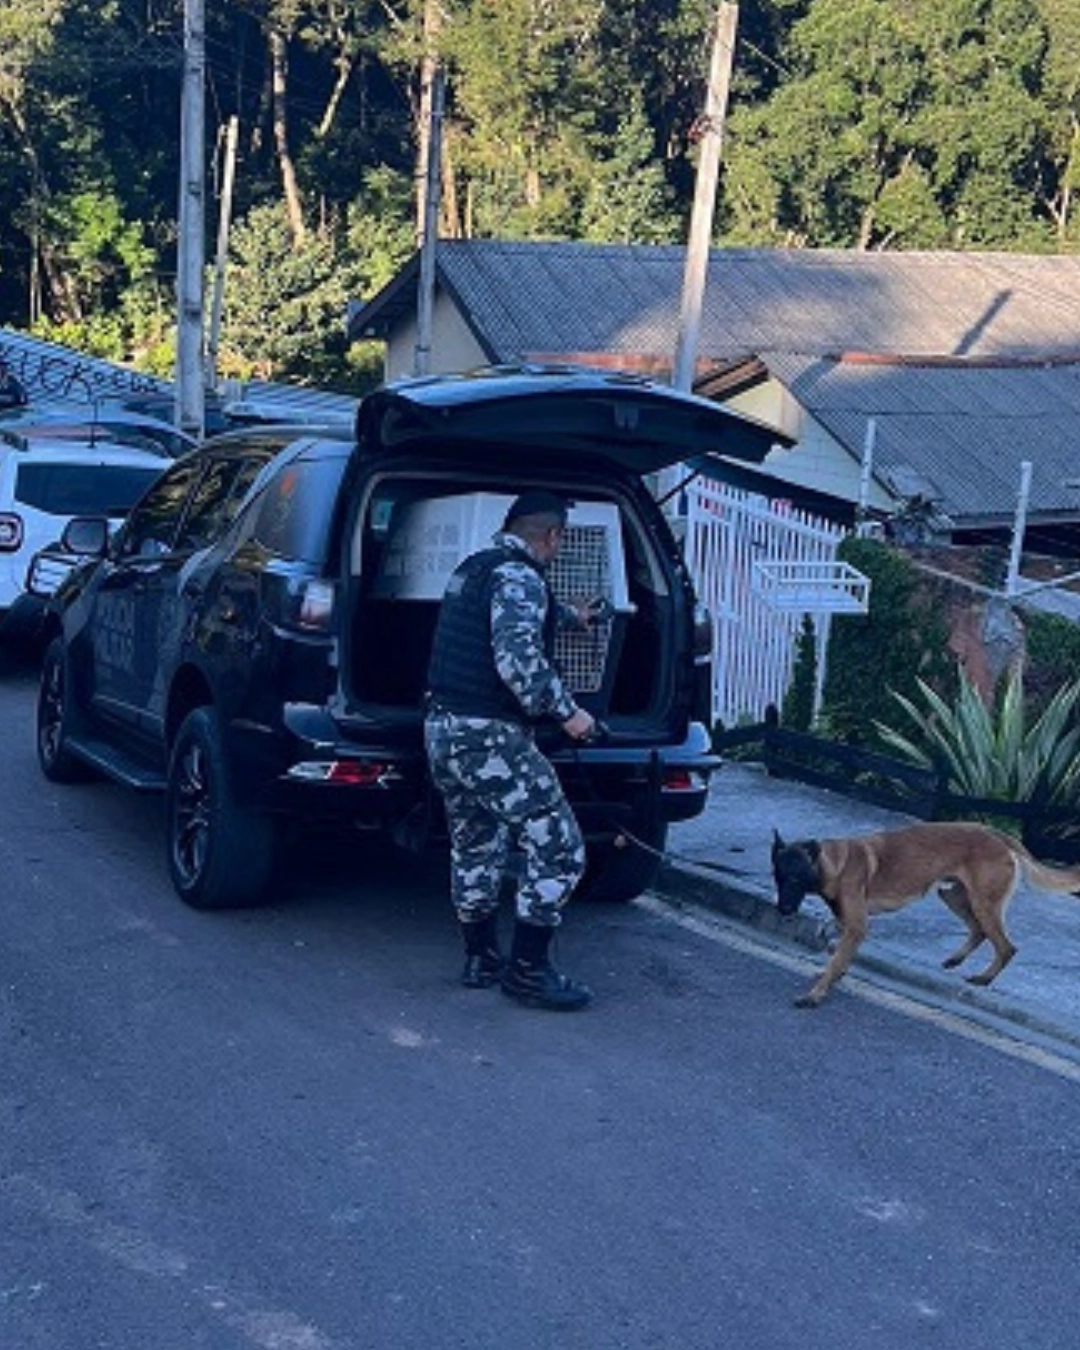 Cães farejadores localizam drogas em posse de jovem no bairro Colônia Maria José